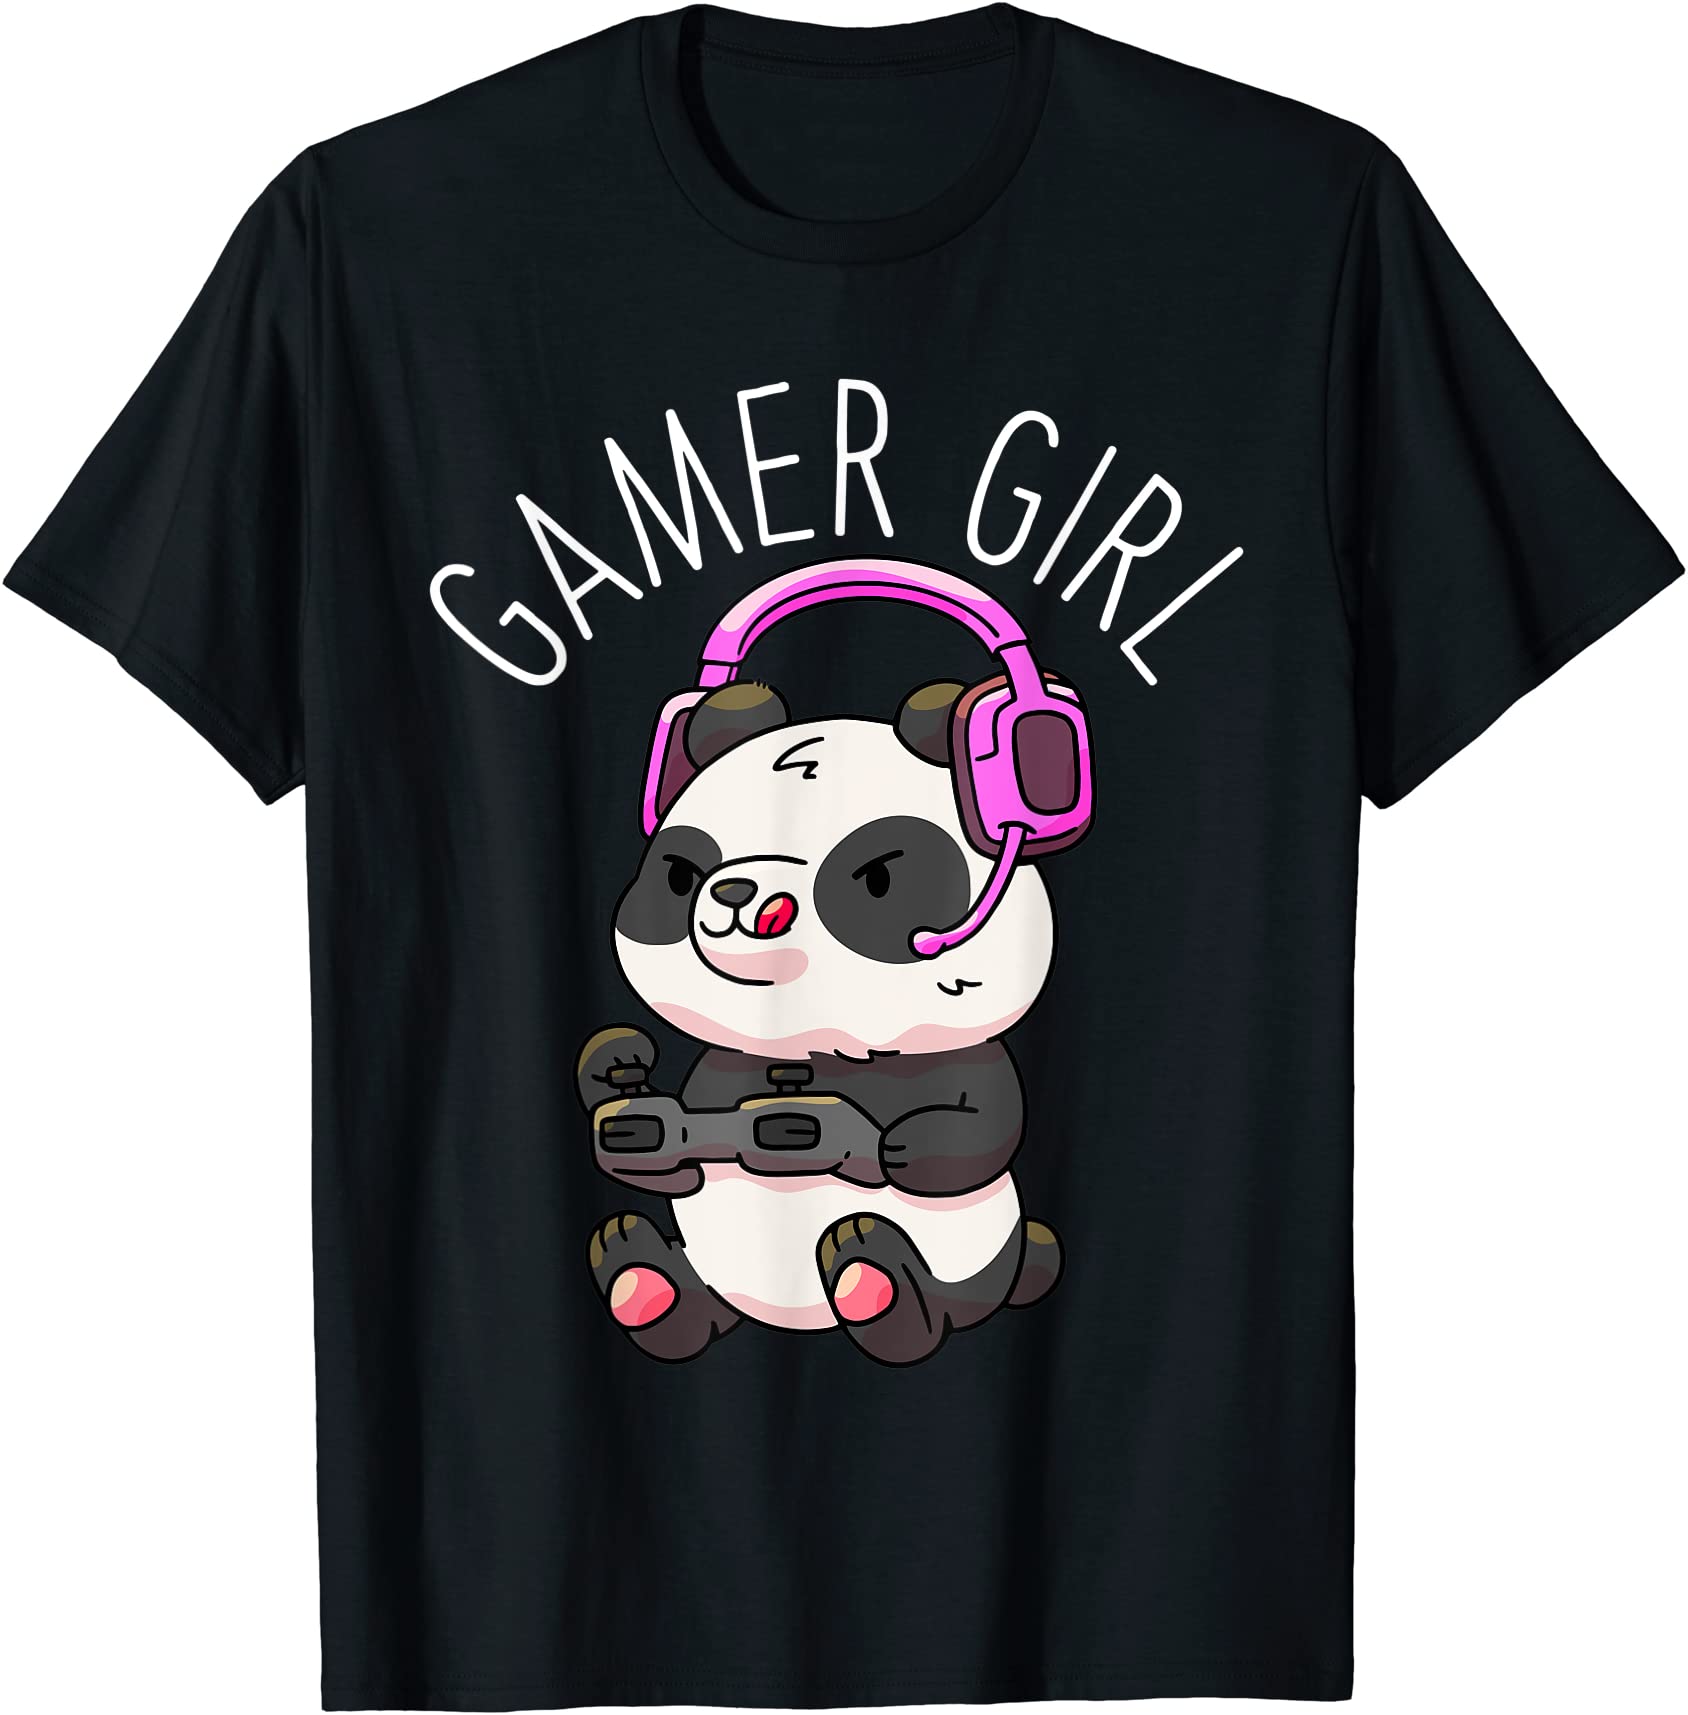 Gamer Girl Panda Gaming Pandas Video Game Women Girls T T Shirt Men Buy T Shirt Designs 